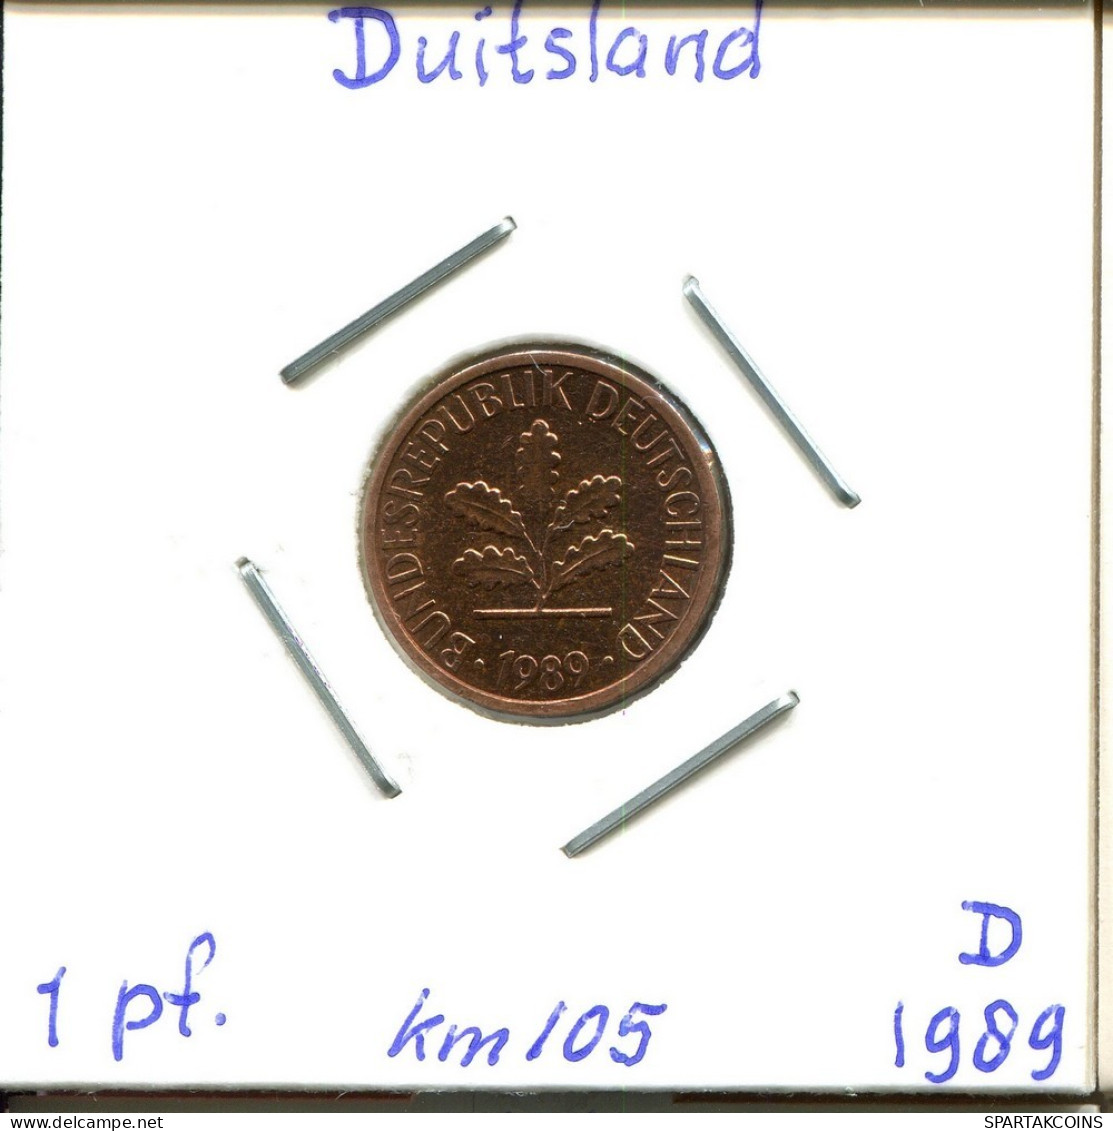 1 PFENNIG 1989 D BRD DEUTSCHLAND Münze GERMANY #DC099.D.A - 1 Pfennig